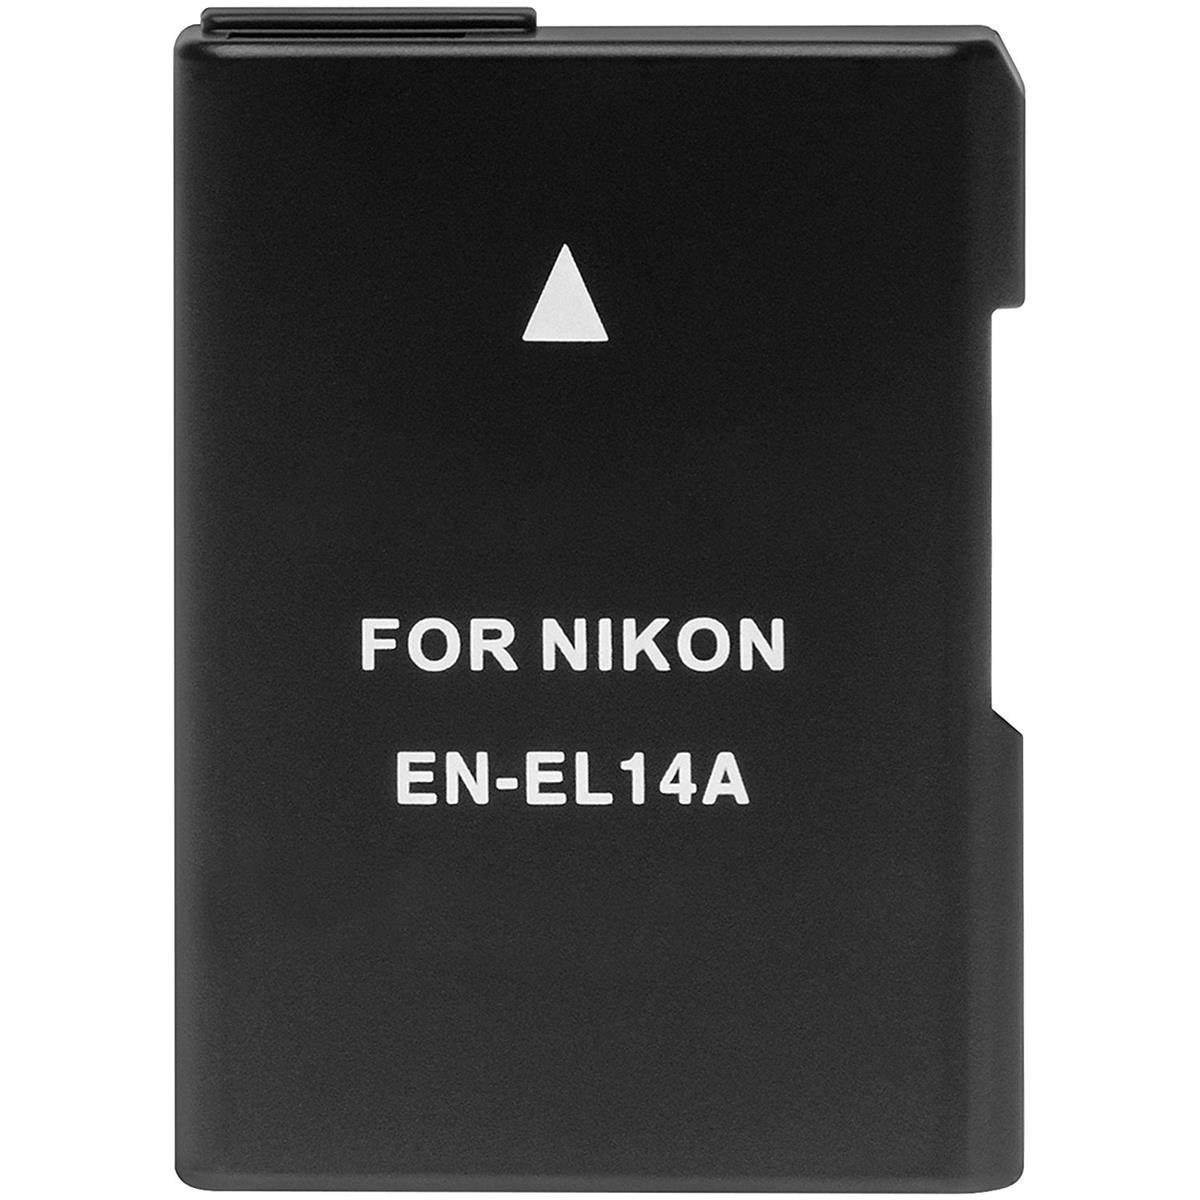 Литий-ионный аккумулятор Power2000 EN-EL14a 7,4 В для цифровых зеркальных фотокамер Nikon